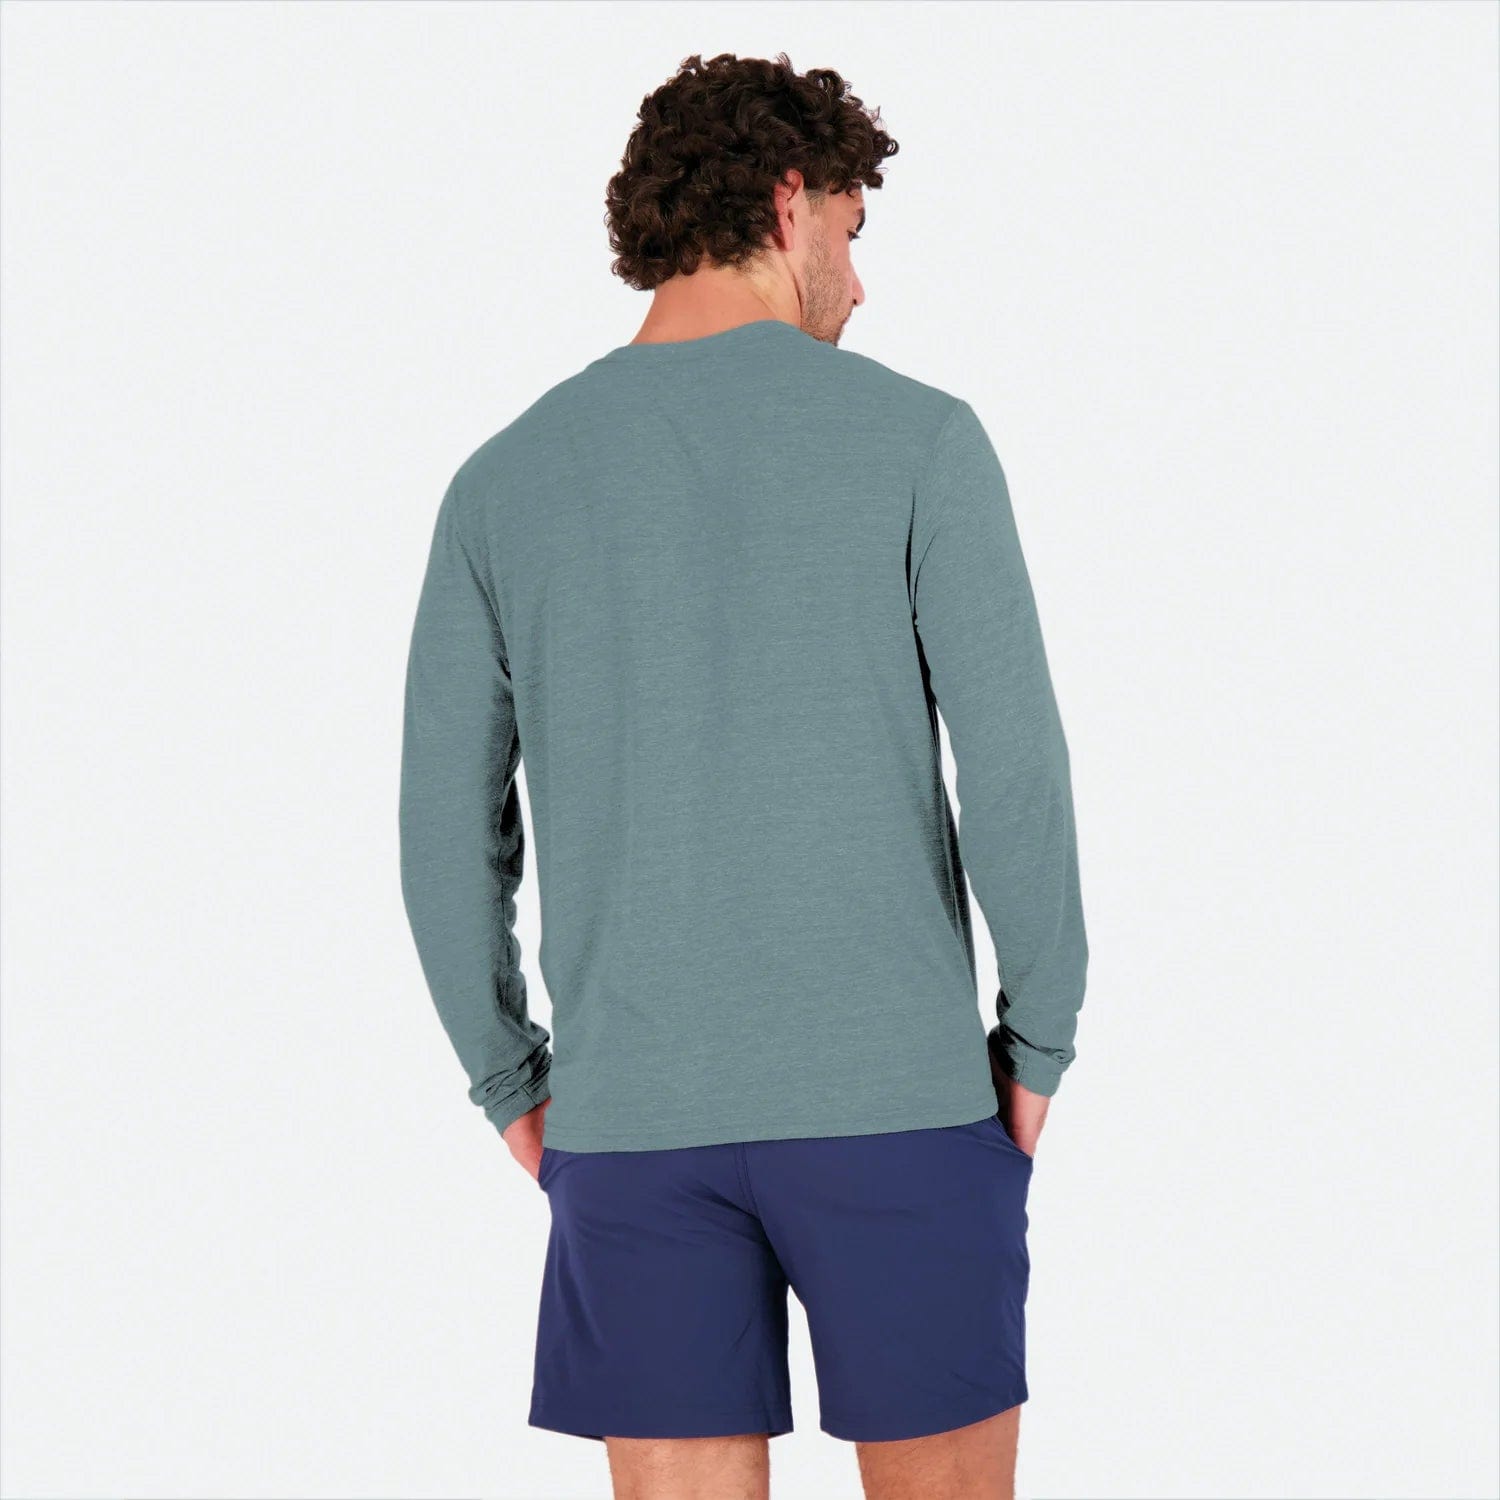 200 Mile Long Sleeve | Unisex T-Shirts | Sustainable Clothing